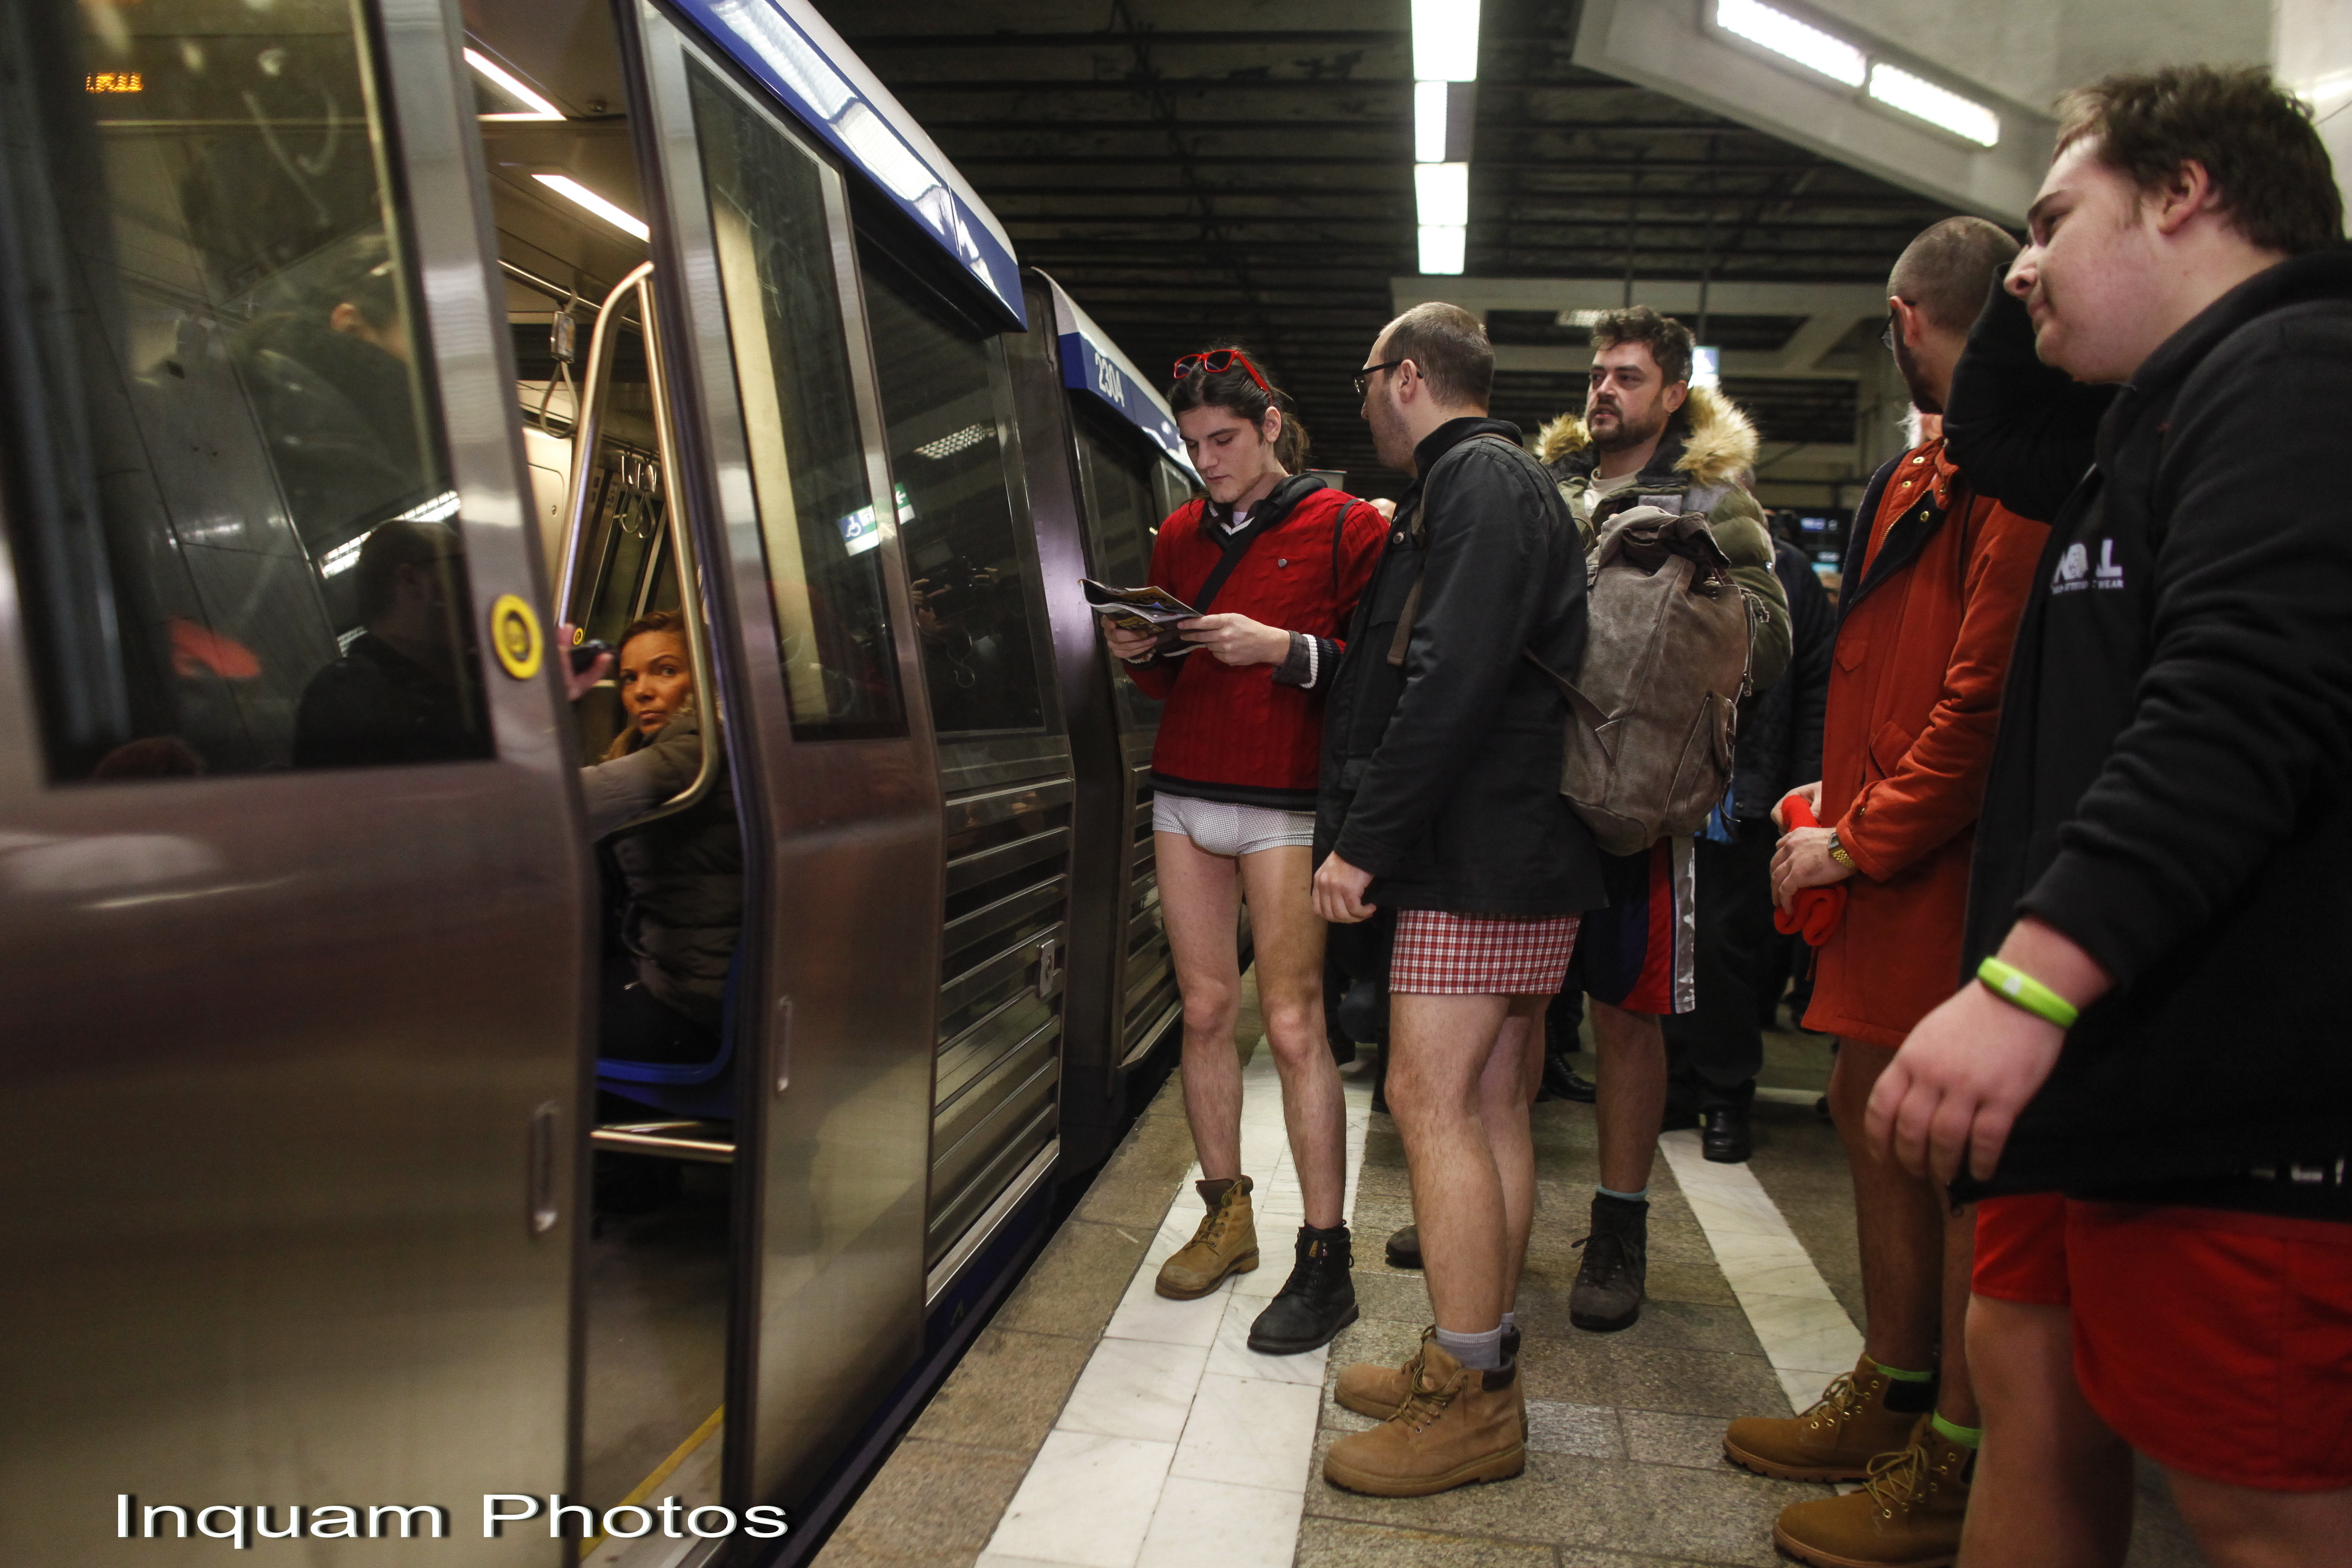 Tinerii din Bucuresti s-au plimbat in lenjerie intima la metrou si au donat haine. Reactiile calatorilor. GALERIE FOTO